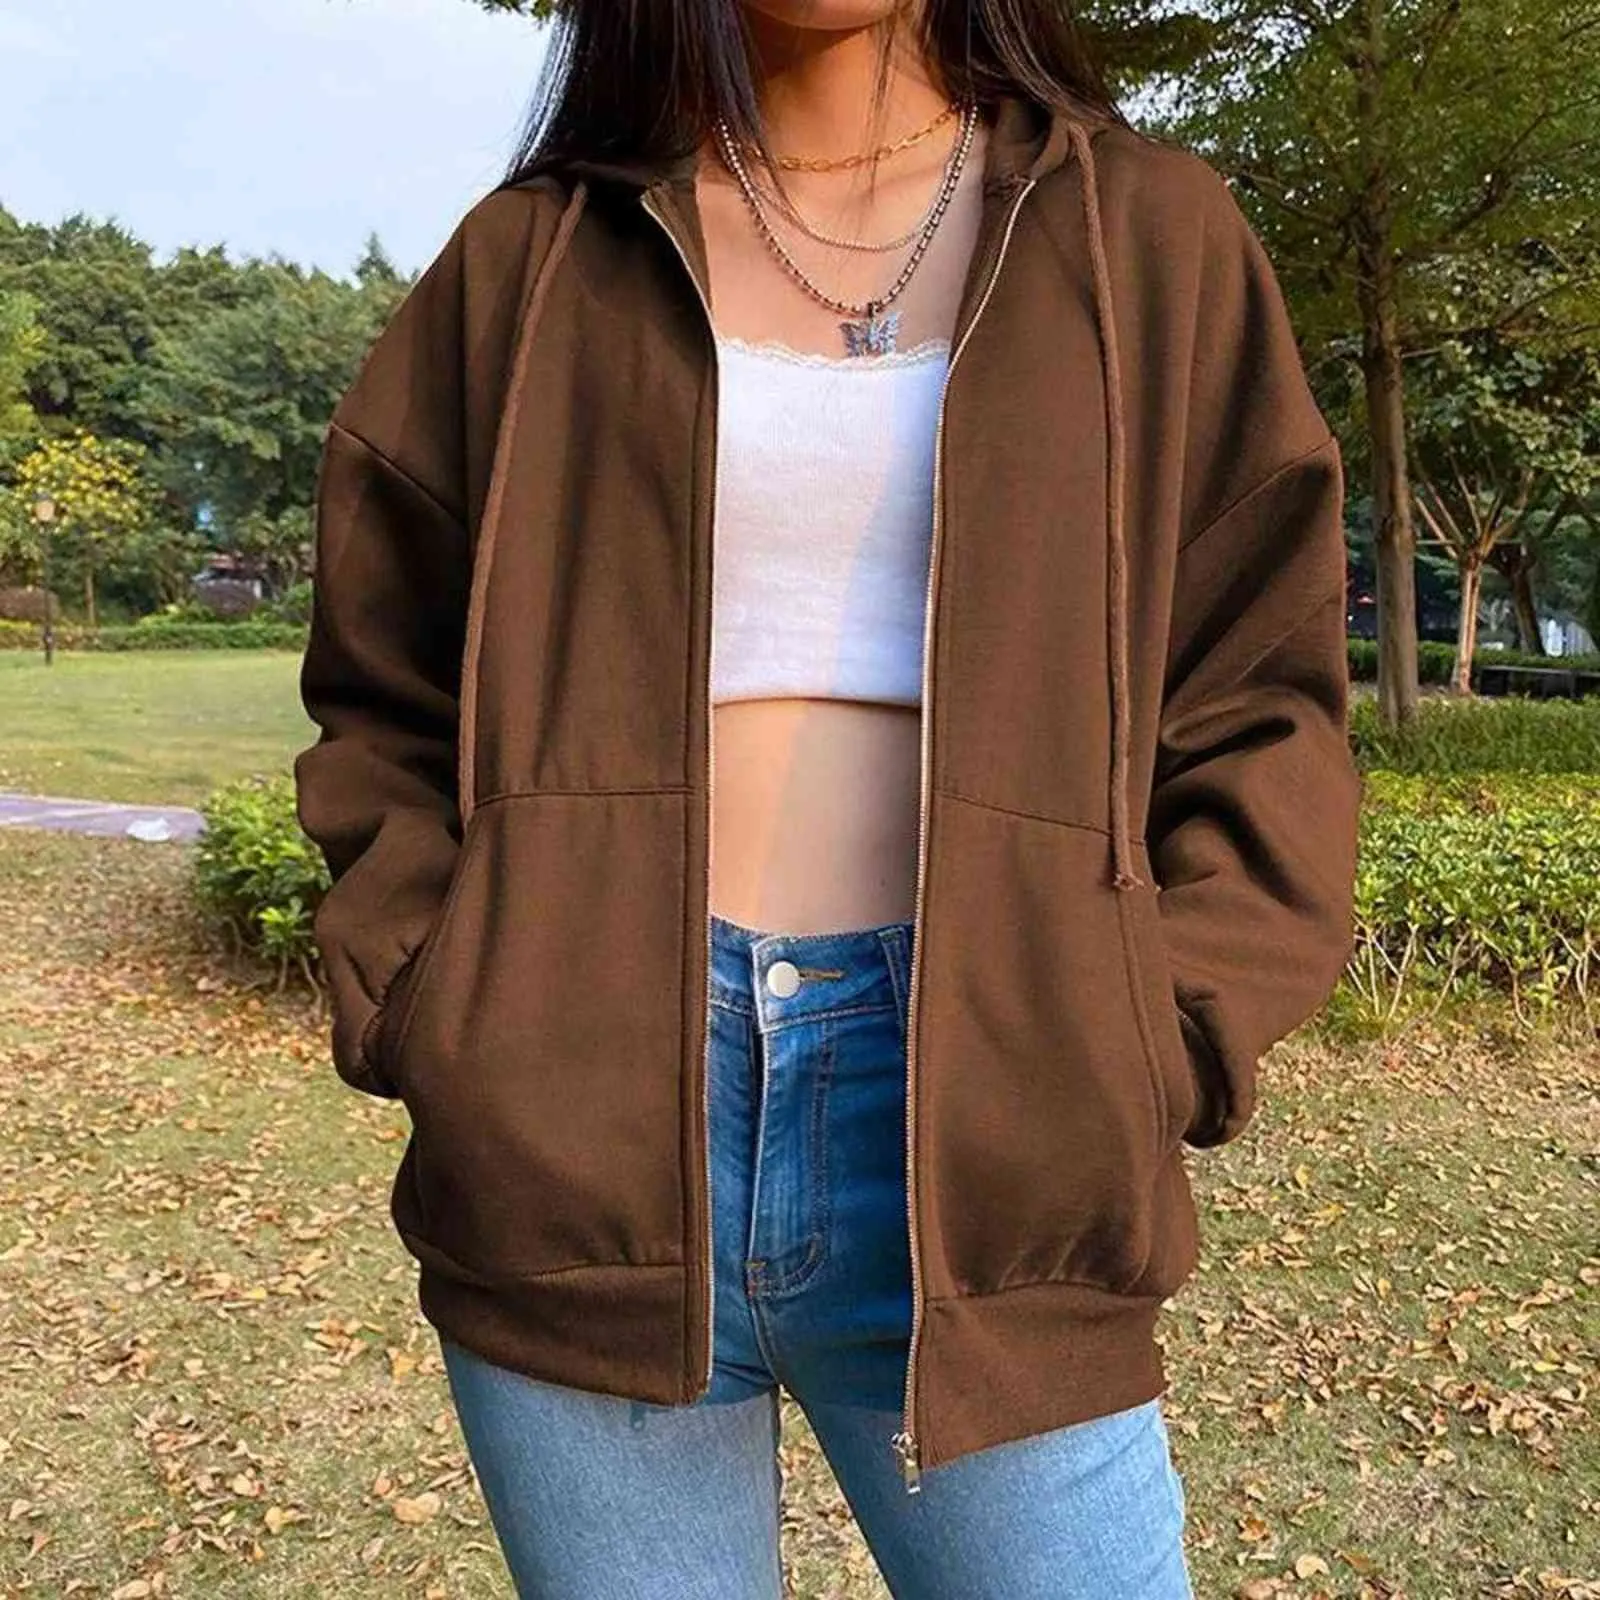 Brown Zip Up Hooded Sweatshirt Women Vintage Pocket Oversized Jacket Tops Autumn Clothes Female Y2K Aesthetic Long Sleeve Hoodie Y1118